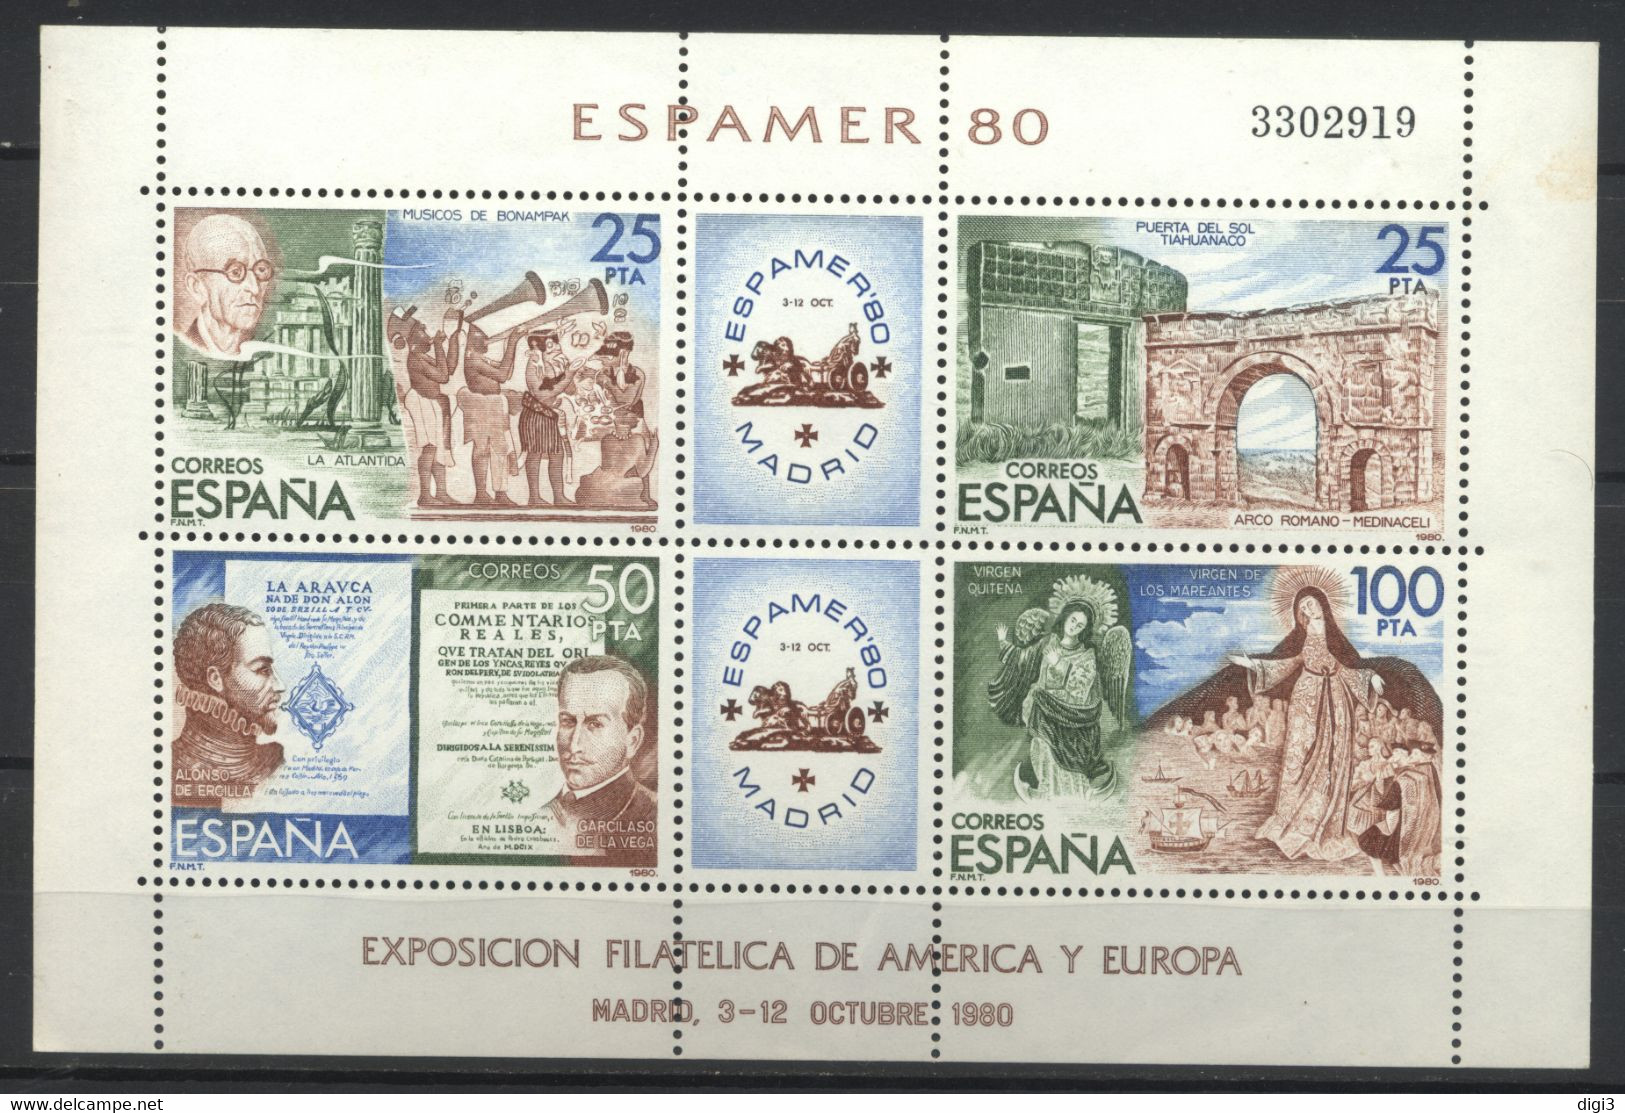 España, 1980, Exposiciòn Filatélica De América Y Europa, ESPAMER 80, Hojita, MNH** - Souvenirbögen